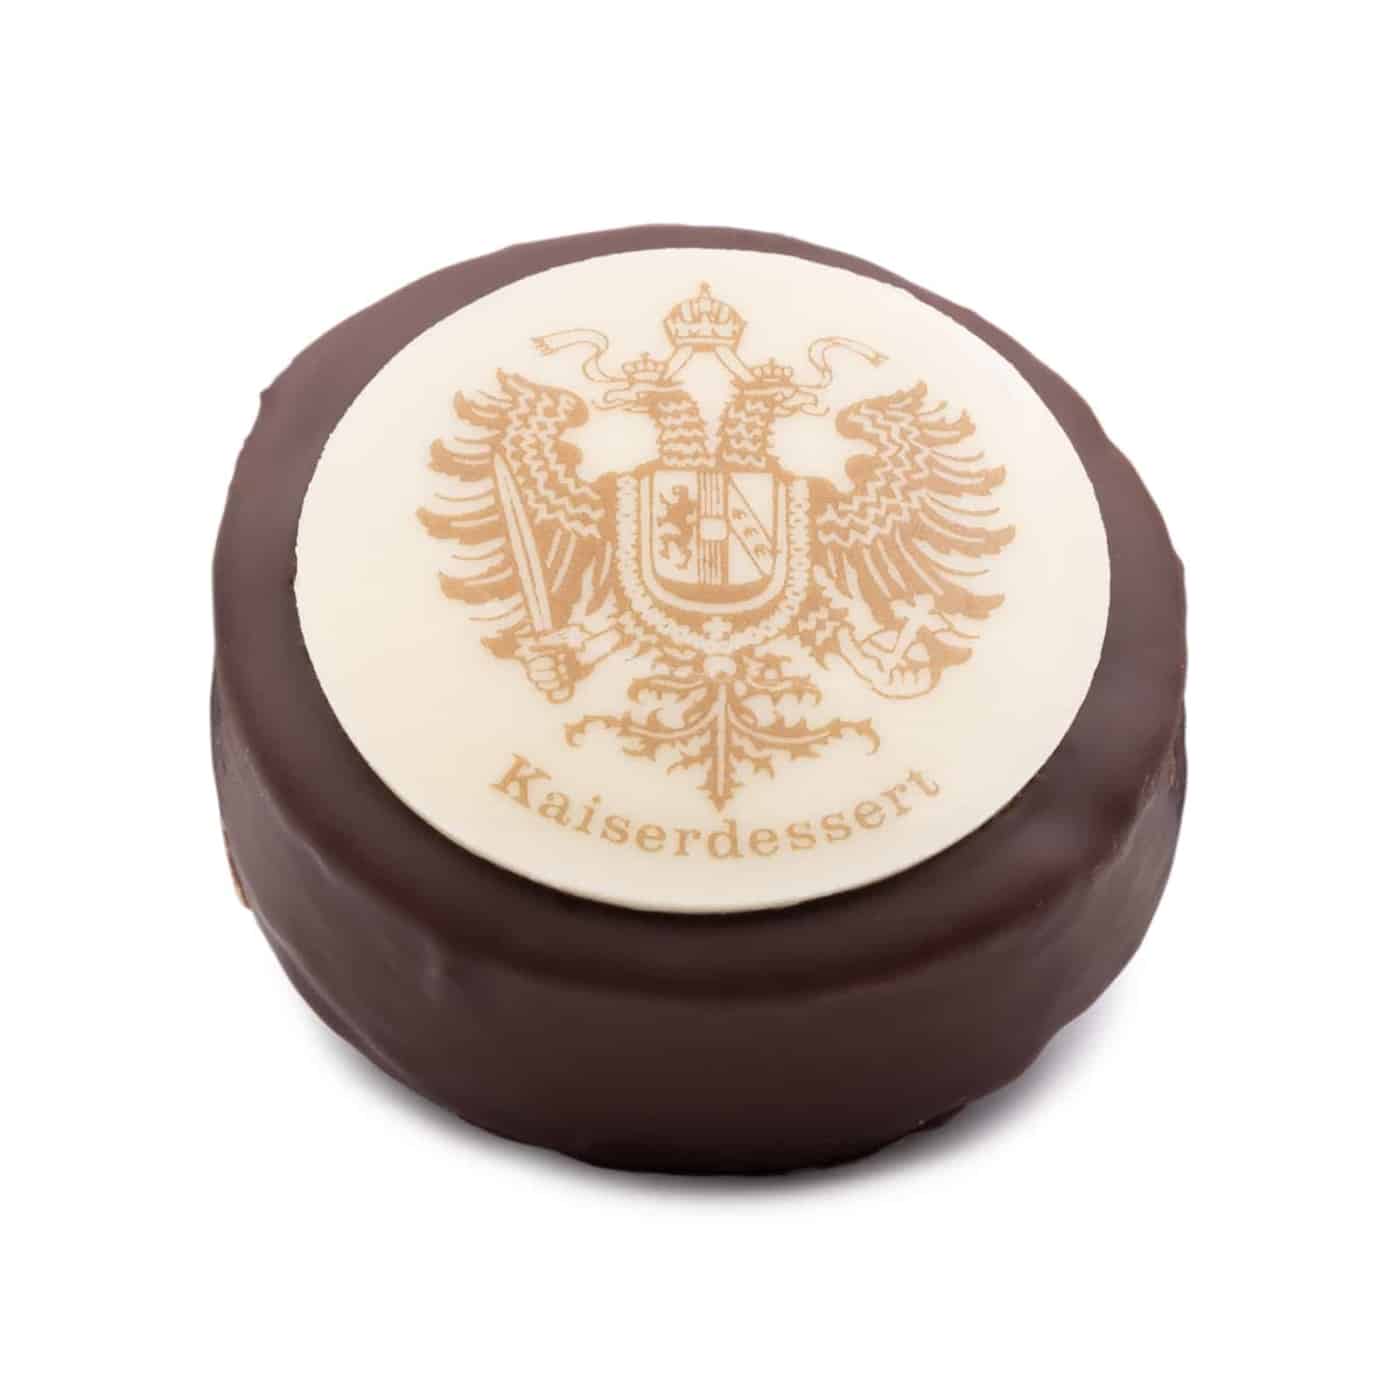 Kaiserdessert aus Orangen-Marzipan, gefüllt mit Cointreau-Trüffelcreme – überzogen mit Zartbitter- und weißer Schokolade.